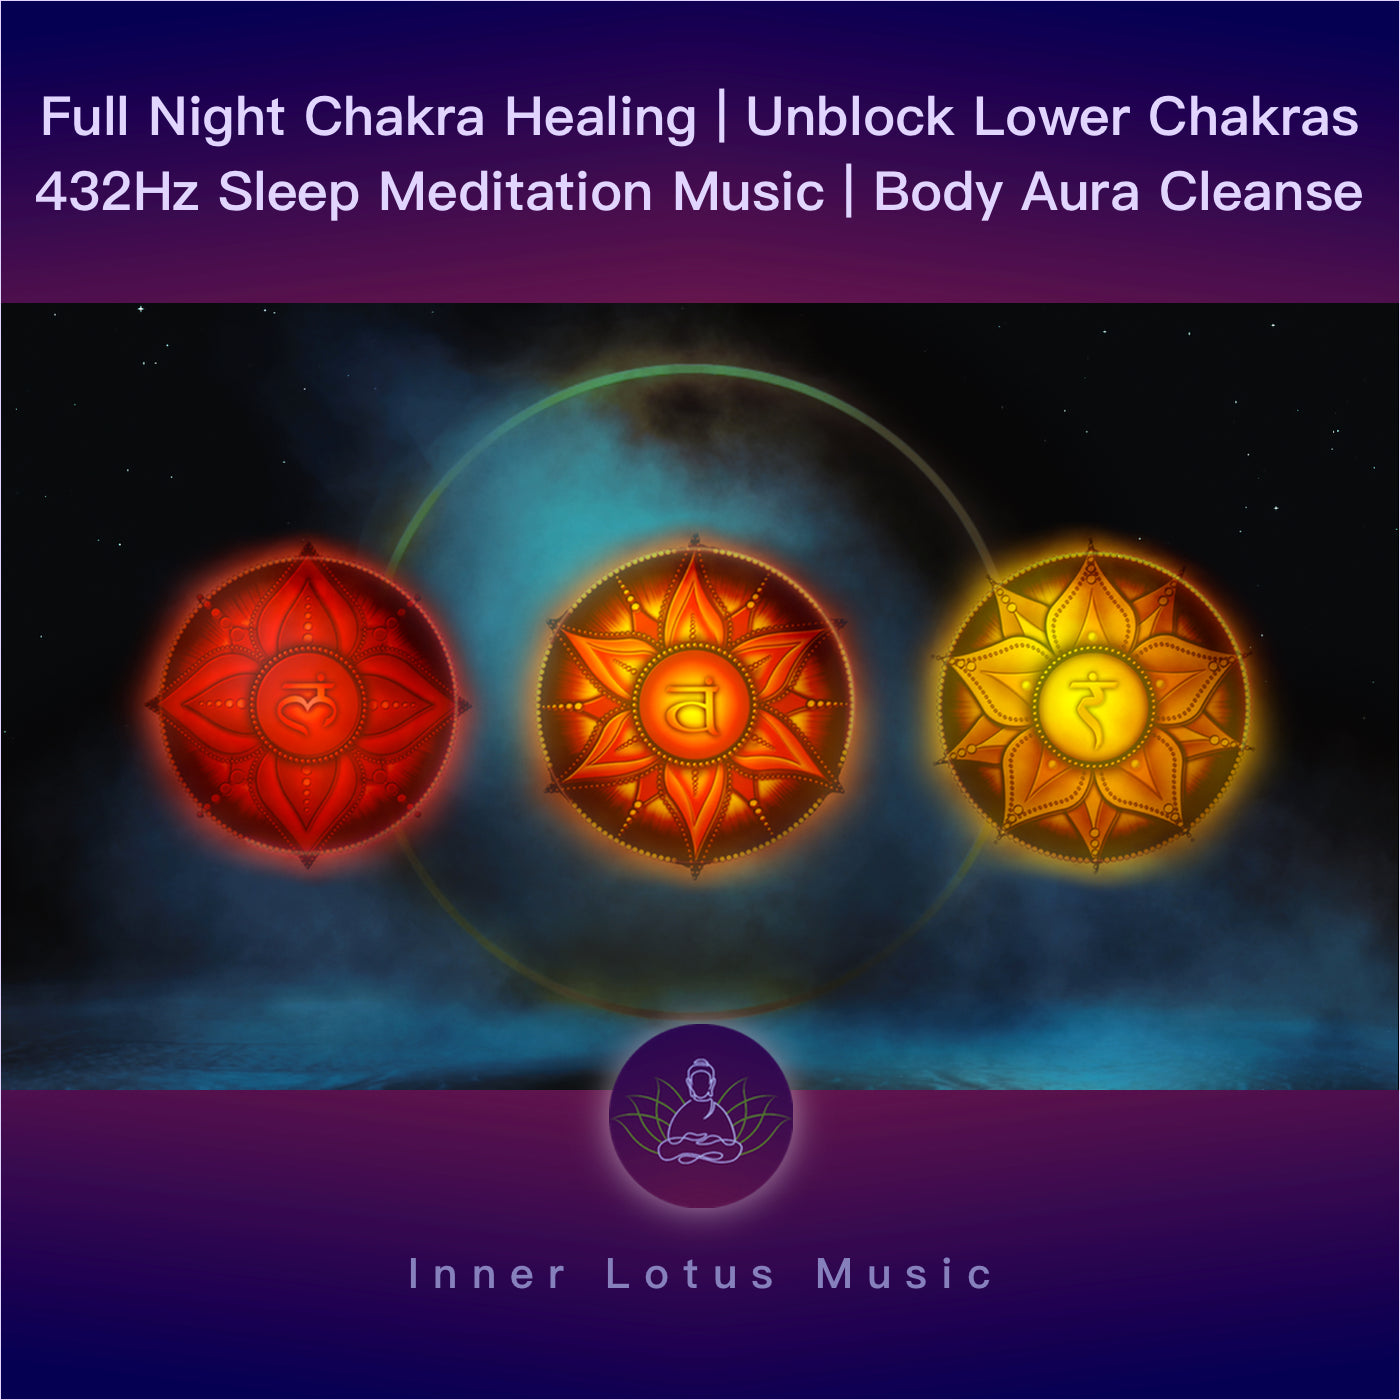 Desbloquea Tus Chakras Inferiores | Apertura y Sanación | Música Curativa 432 Hz Meditación y Sueño